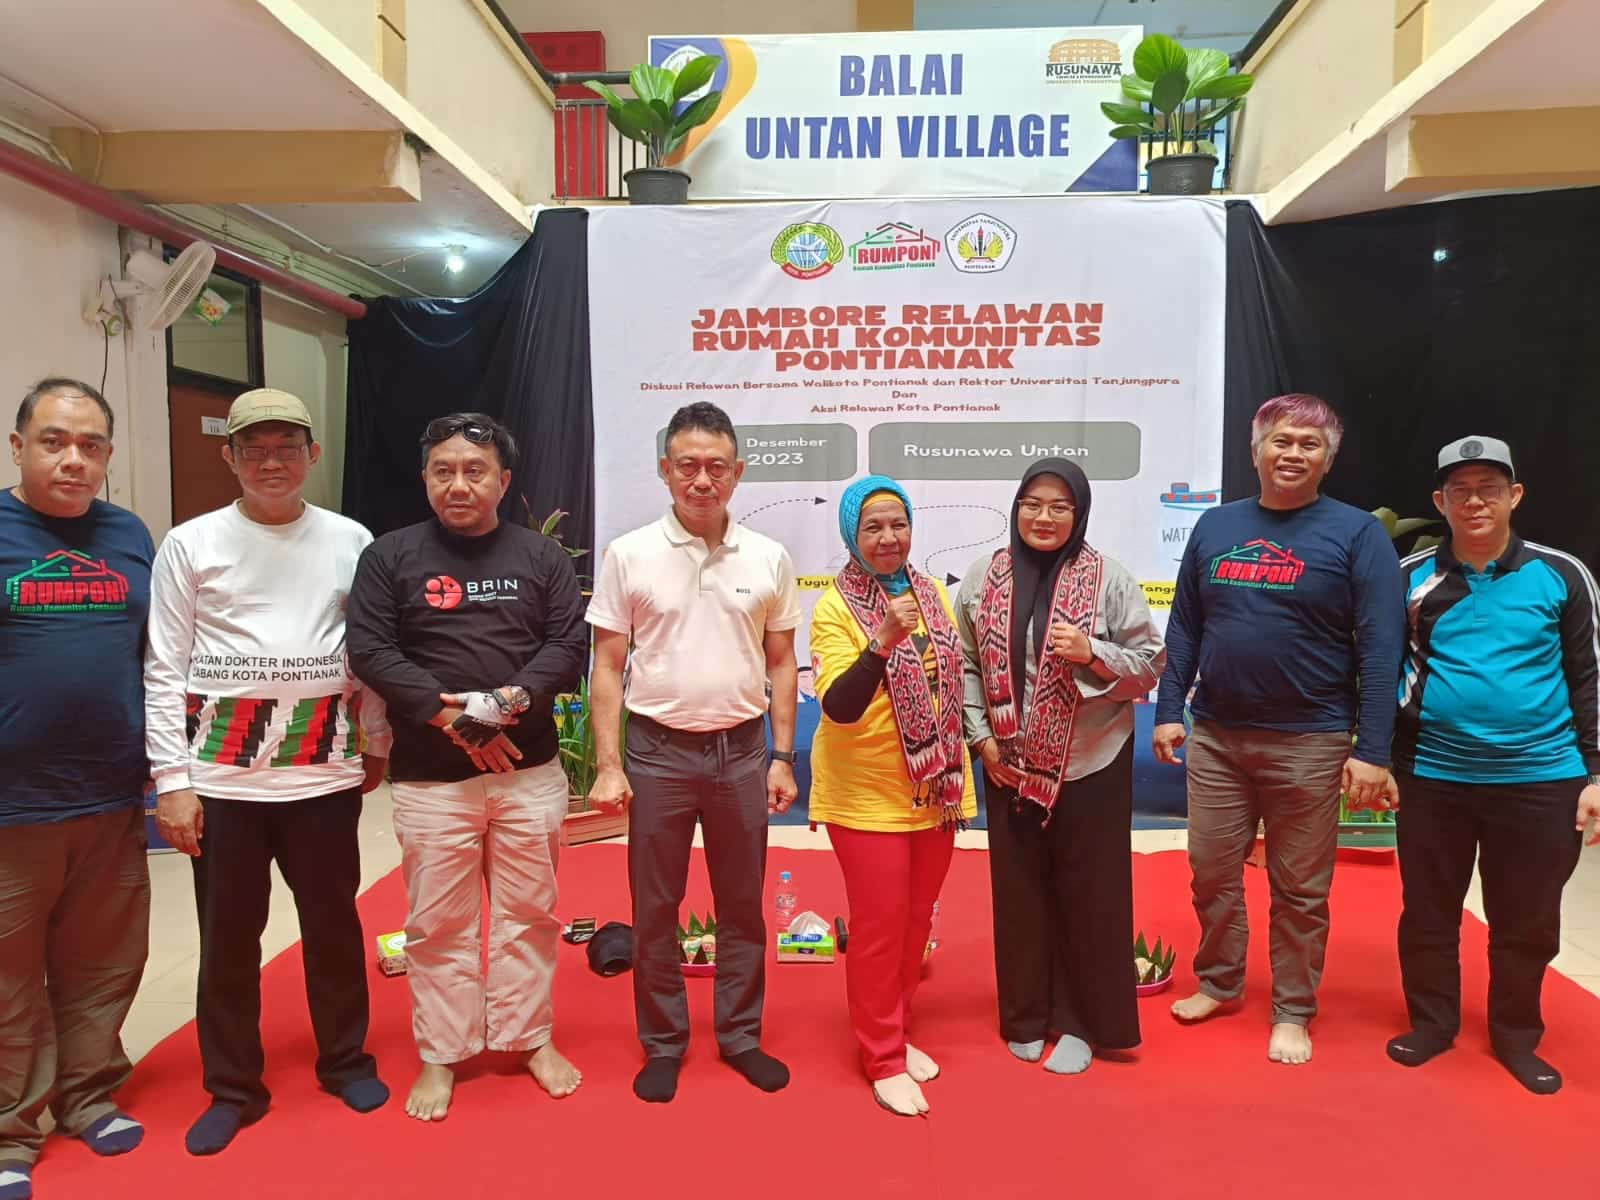 Wali Kota Pontianak Edi Rusdi Kamtono foto bersama Ketua Rumpon Ario Sabrang dan anggota komunitas. (Foto: Prokopim Pontianak)